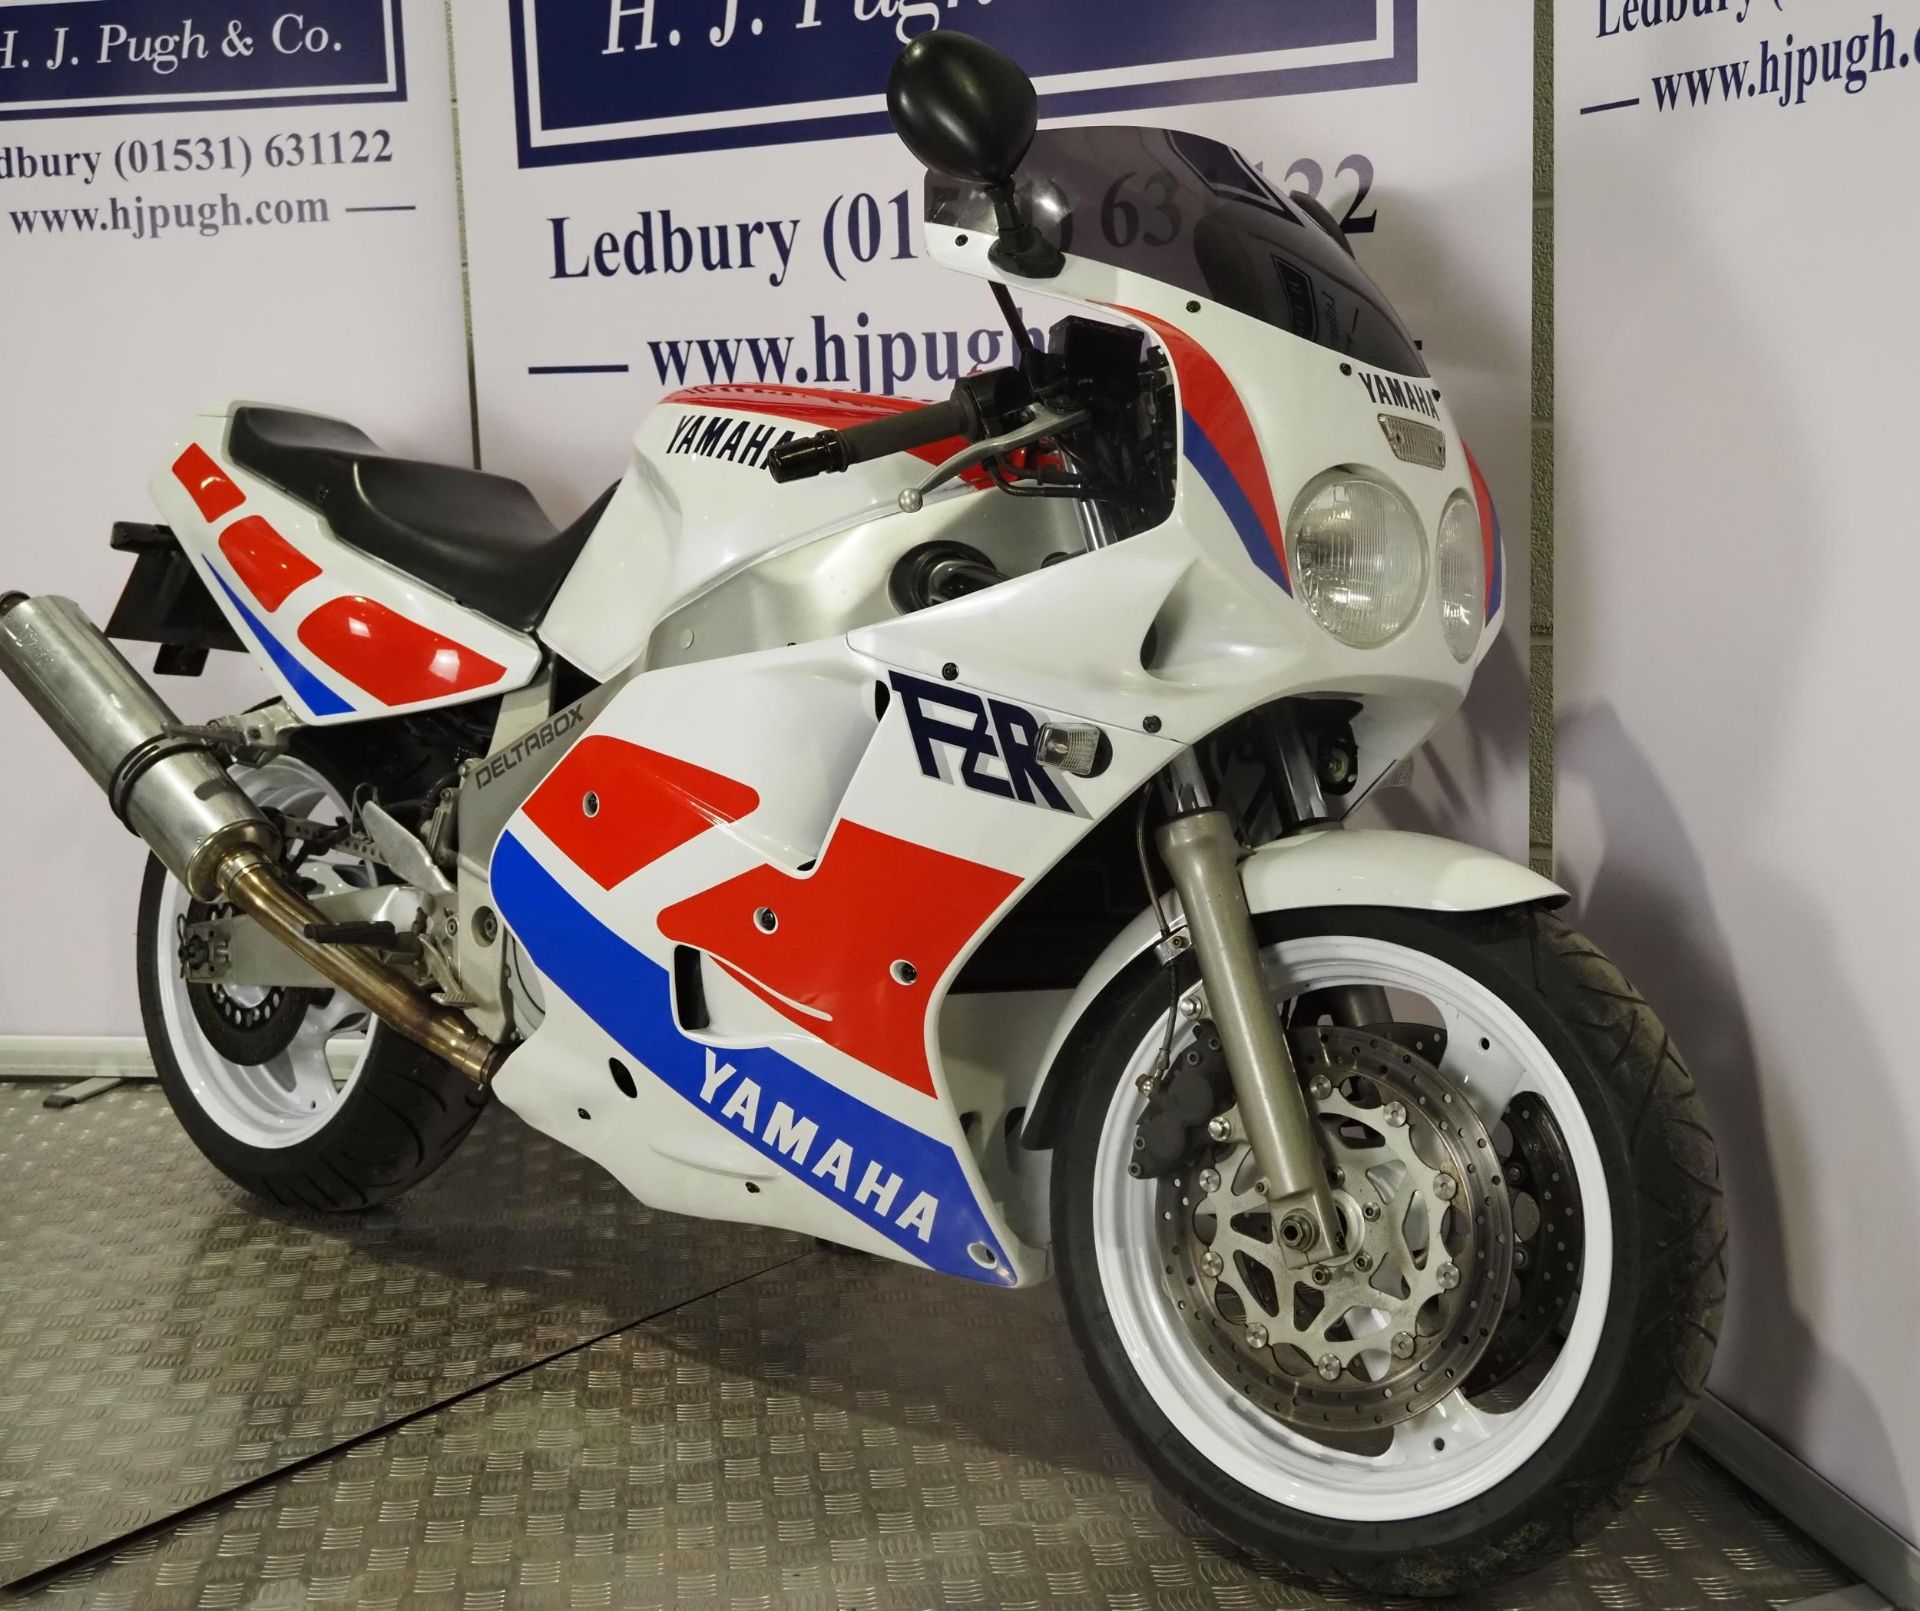 Yamaha FZR1000 exup motorcycle. 1990. 1002cc Runs and rides. Reg. H684 FLK. V5. Key - Image 3 of 7